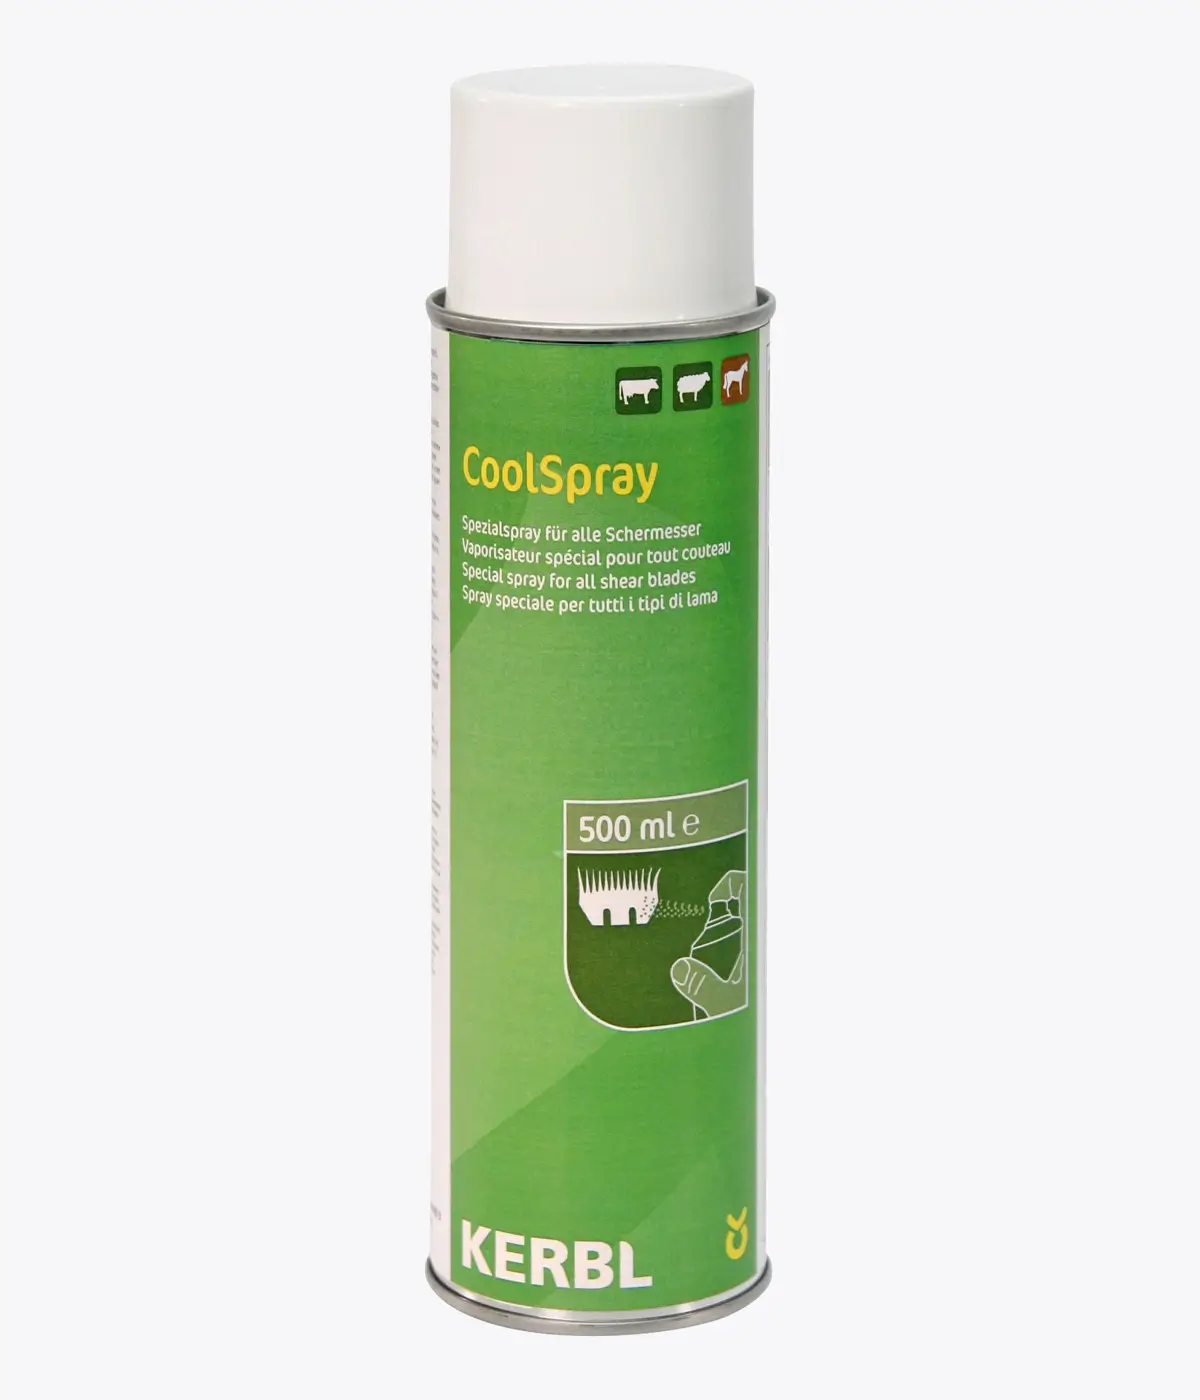 KERBL Constanta Cool Spray 500 ml für Schermesser